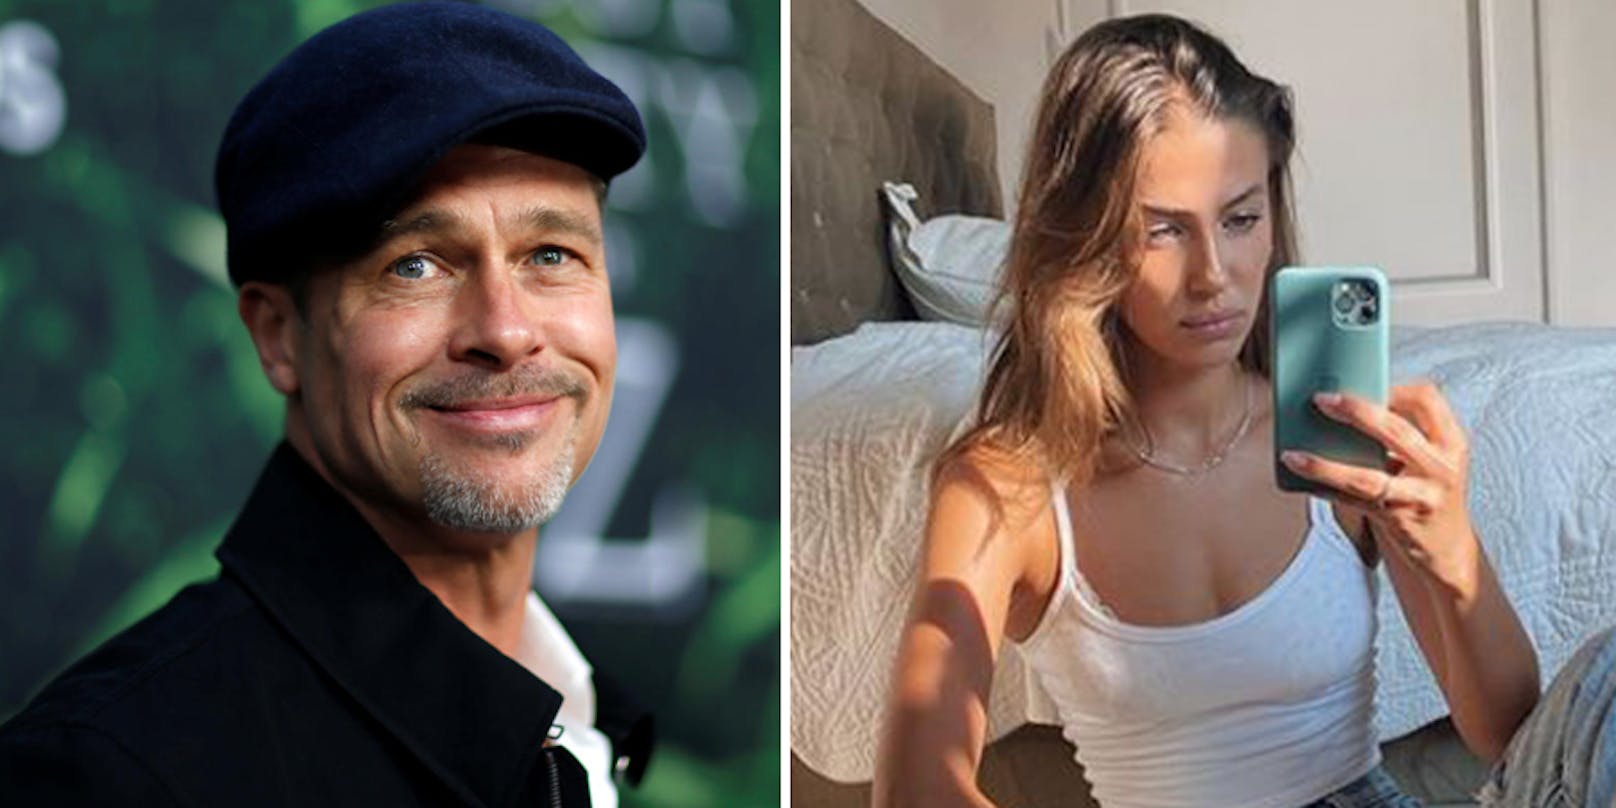 Laut einem Insider haben sich&nbsp;<strong>Brad Pitt</strong> und <strong>Nicole Poturalski</strong>&nbsp;nach kurzer, gemeinsamer Zeit getrennt: "Es war nie so ernst, wie einige vielleicht dachten."